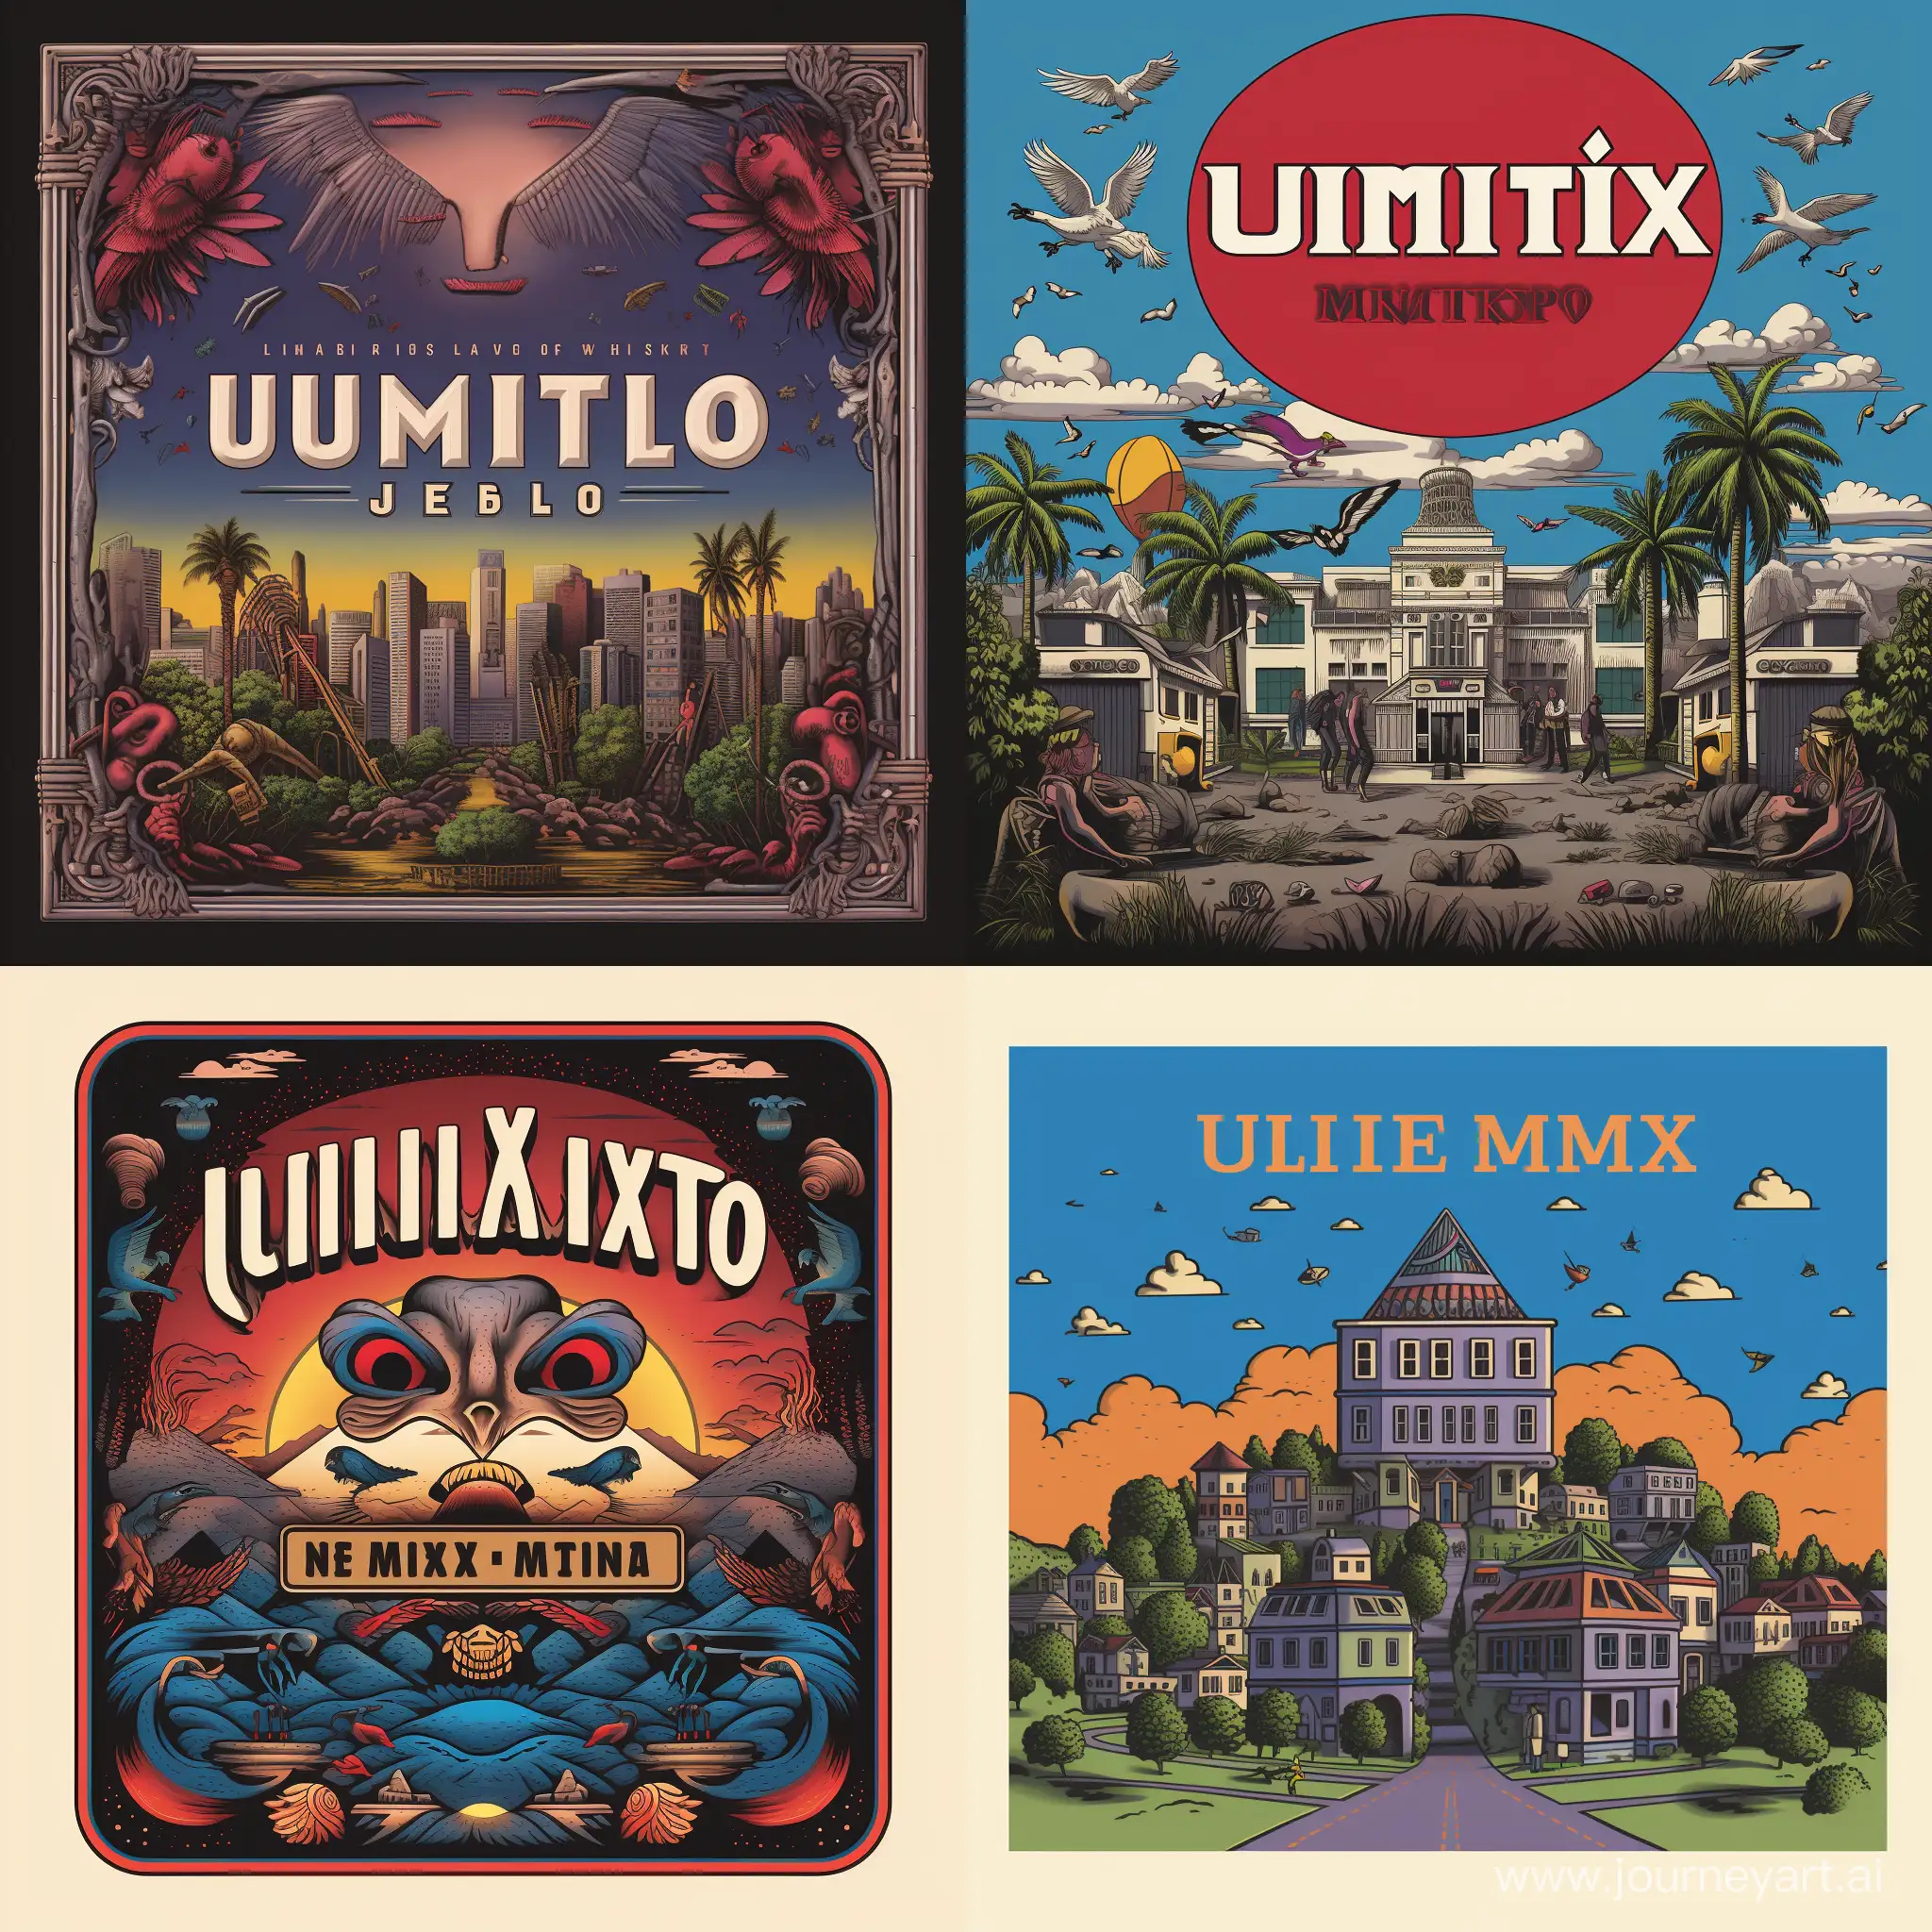 квадратный постер на обложку диска на которой все что олицетворяет культуру 2000-х,80-х и 90-х посередине надпись "ULTIMIX" 